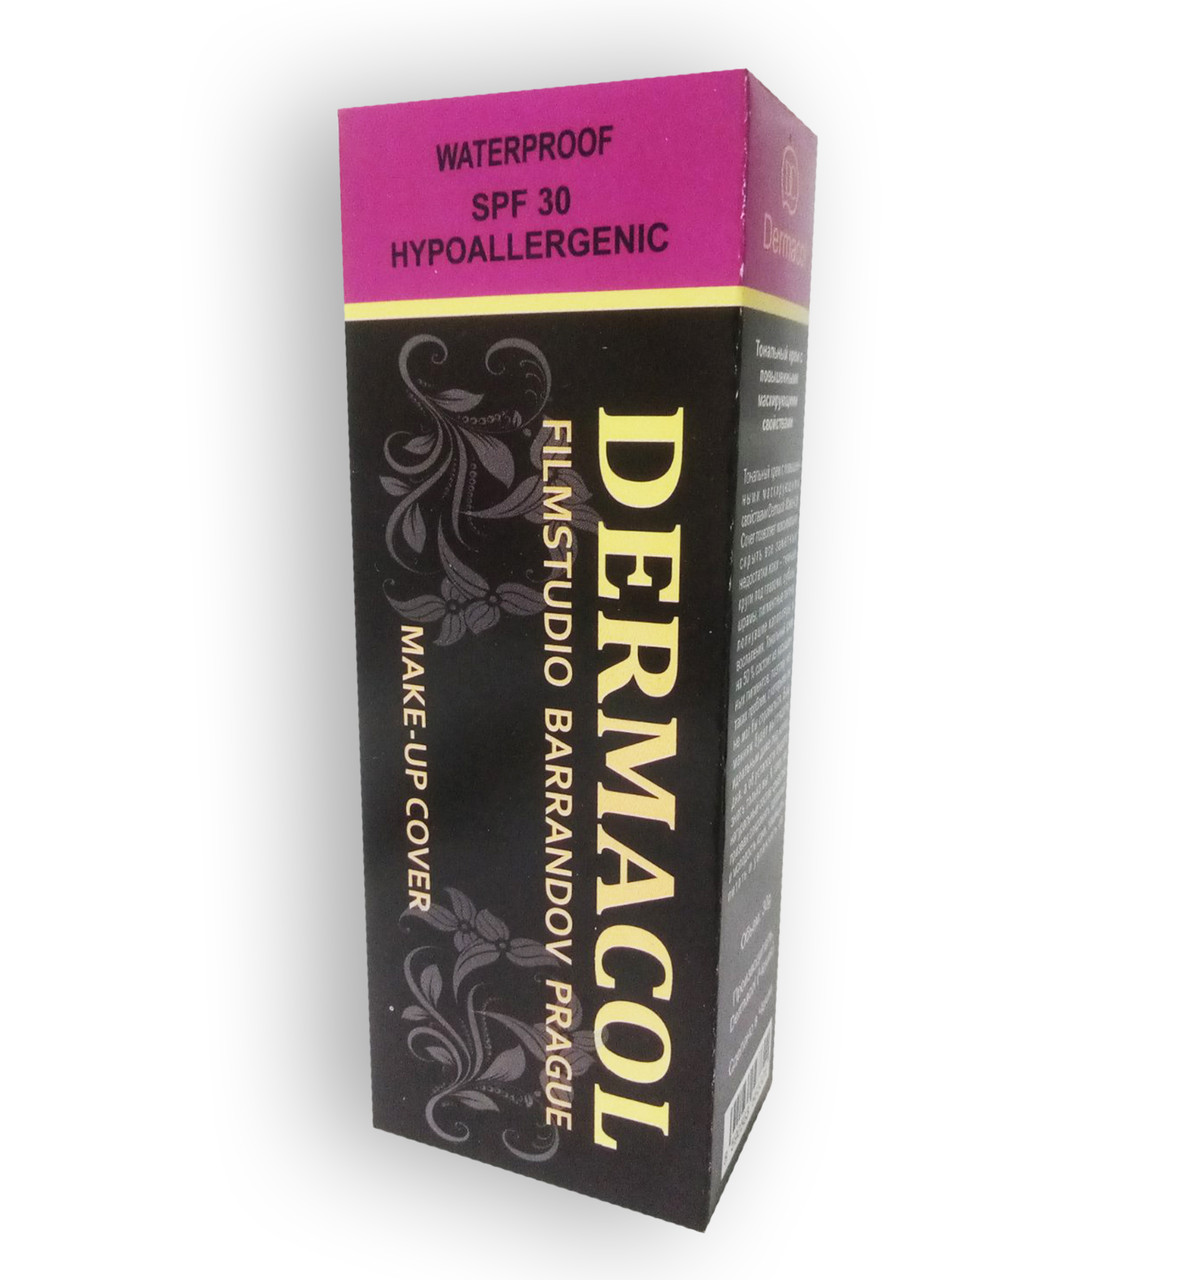 Dermacol — Тональний крем (Дерамакол)